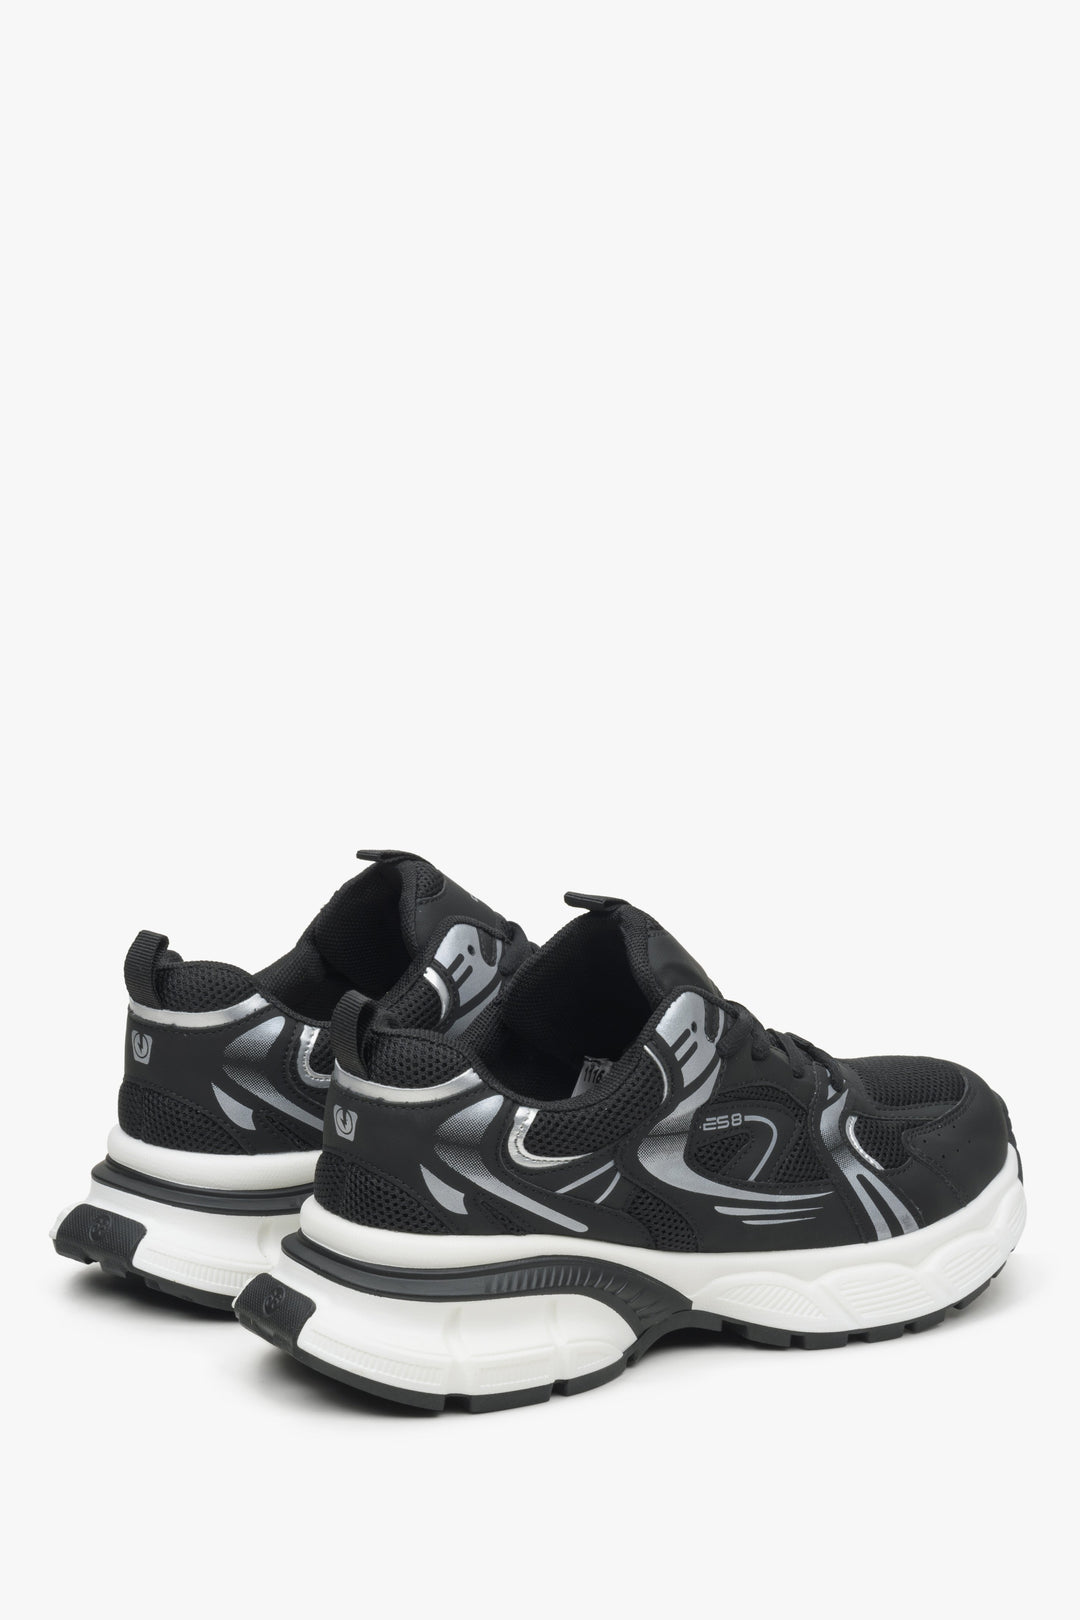 Czarne sneakersy damskie ES 8 - zbliżenie na zapiętek i linię boczną butów.